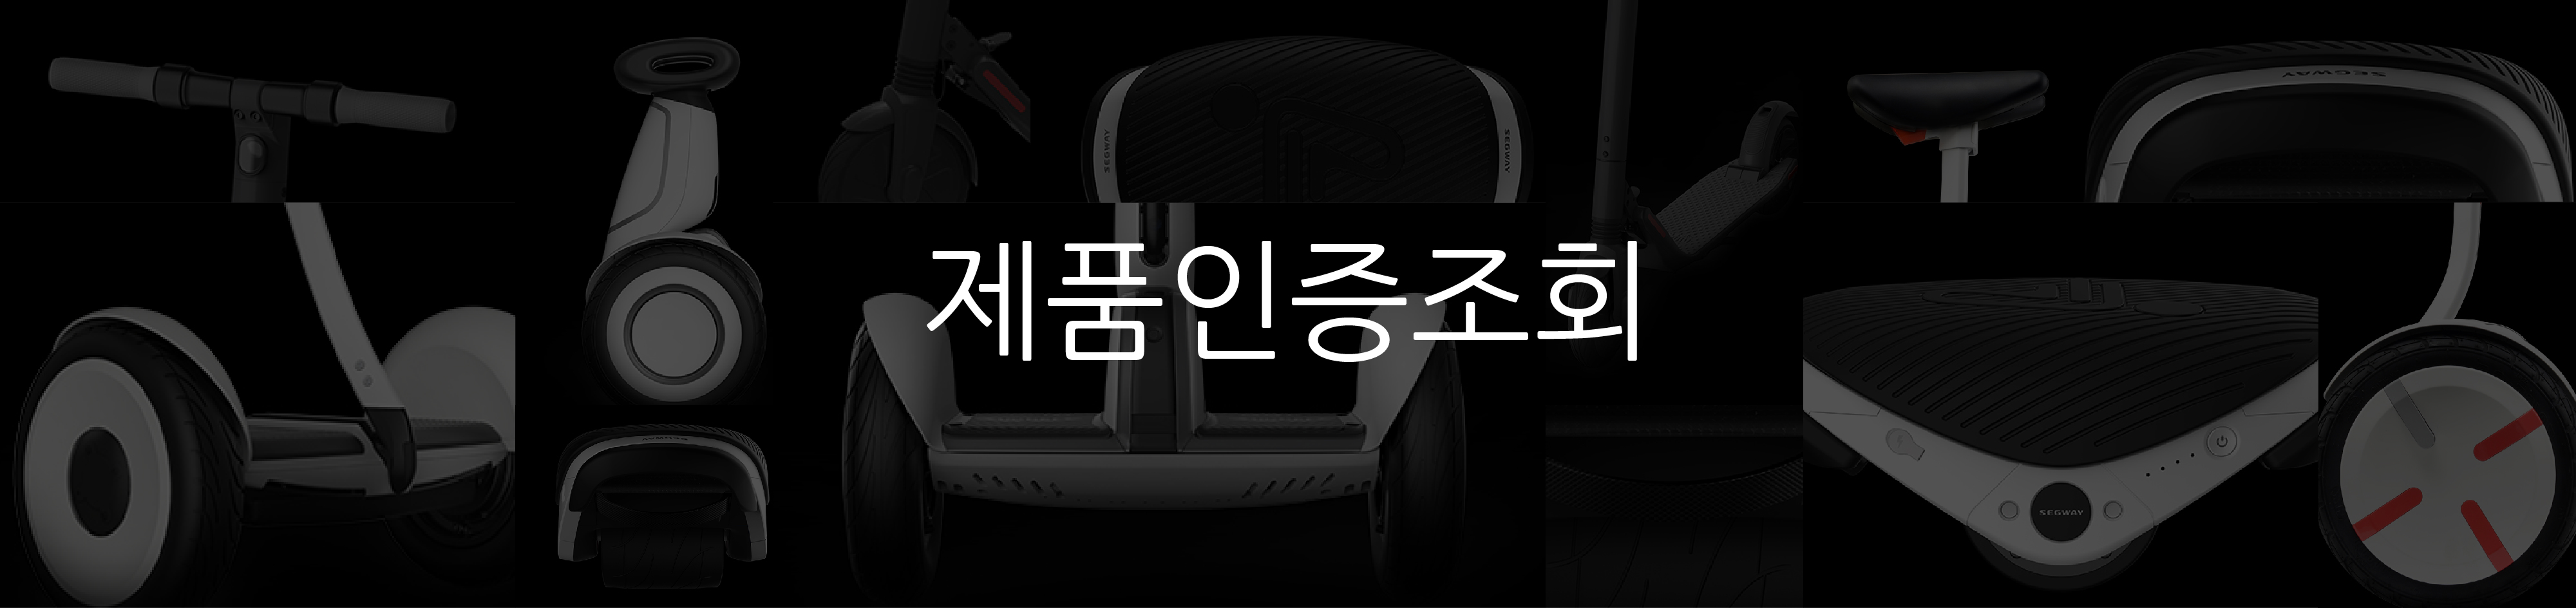 韩国官网页面-01(1)(1).jpg